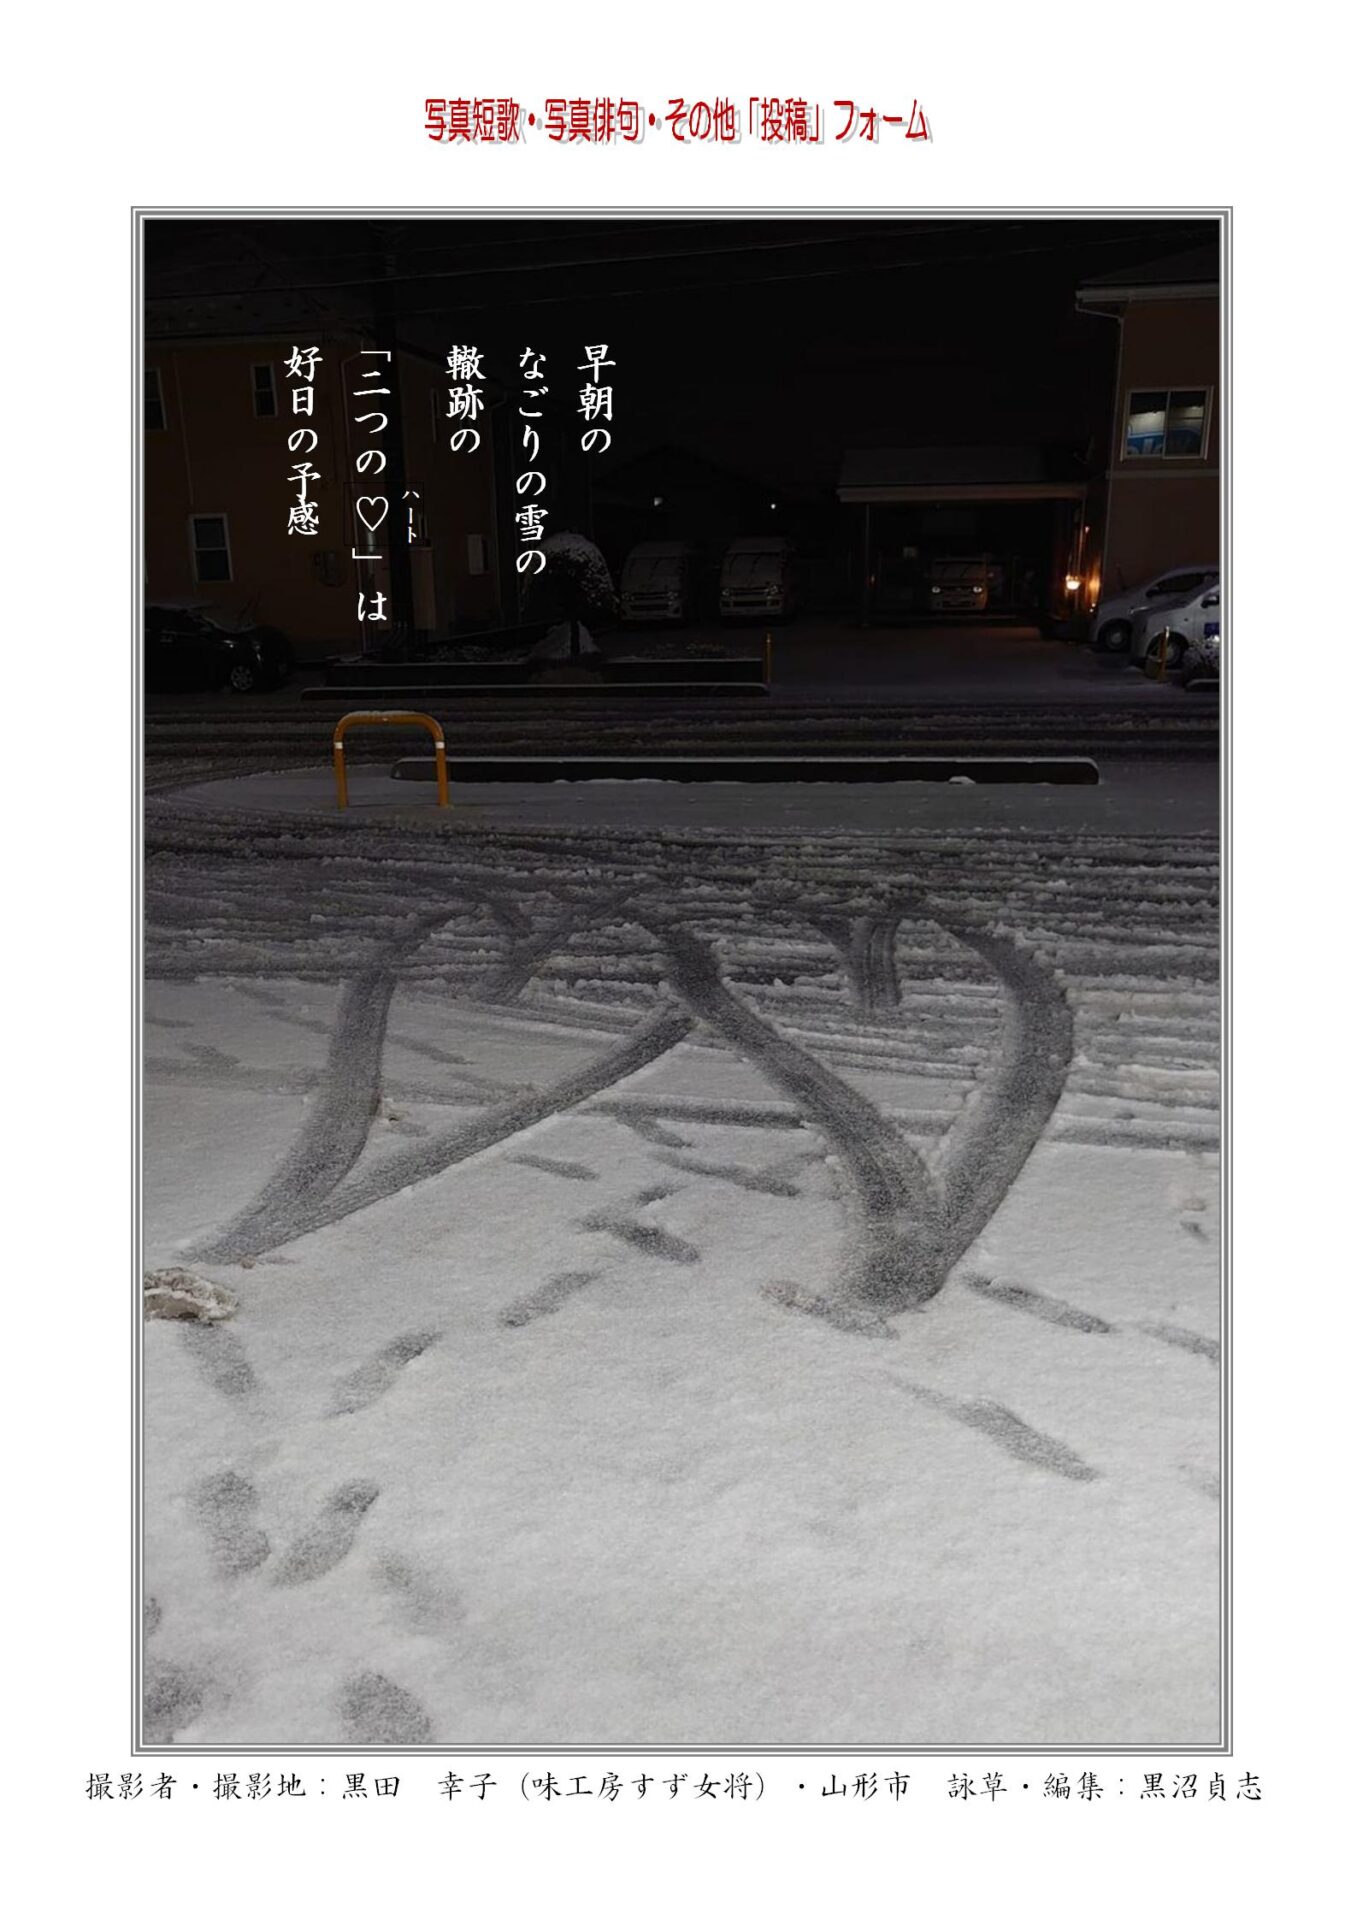 作品番号-３９（共同制作写真短歌）：早朝のなごりの雪の轍跡の「二つのハート」は好日の予感